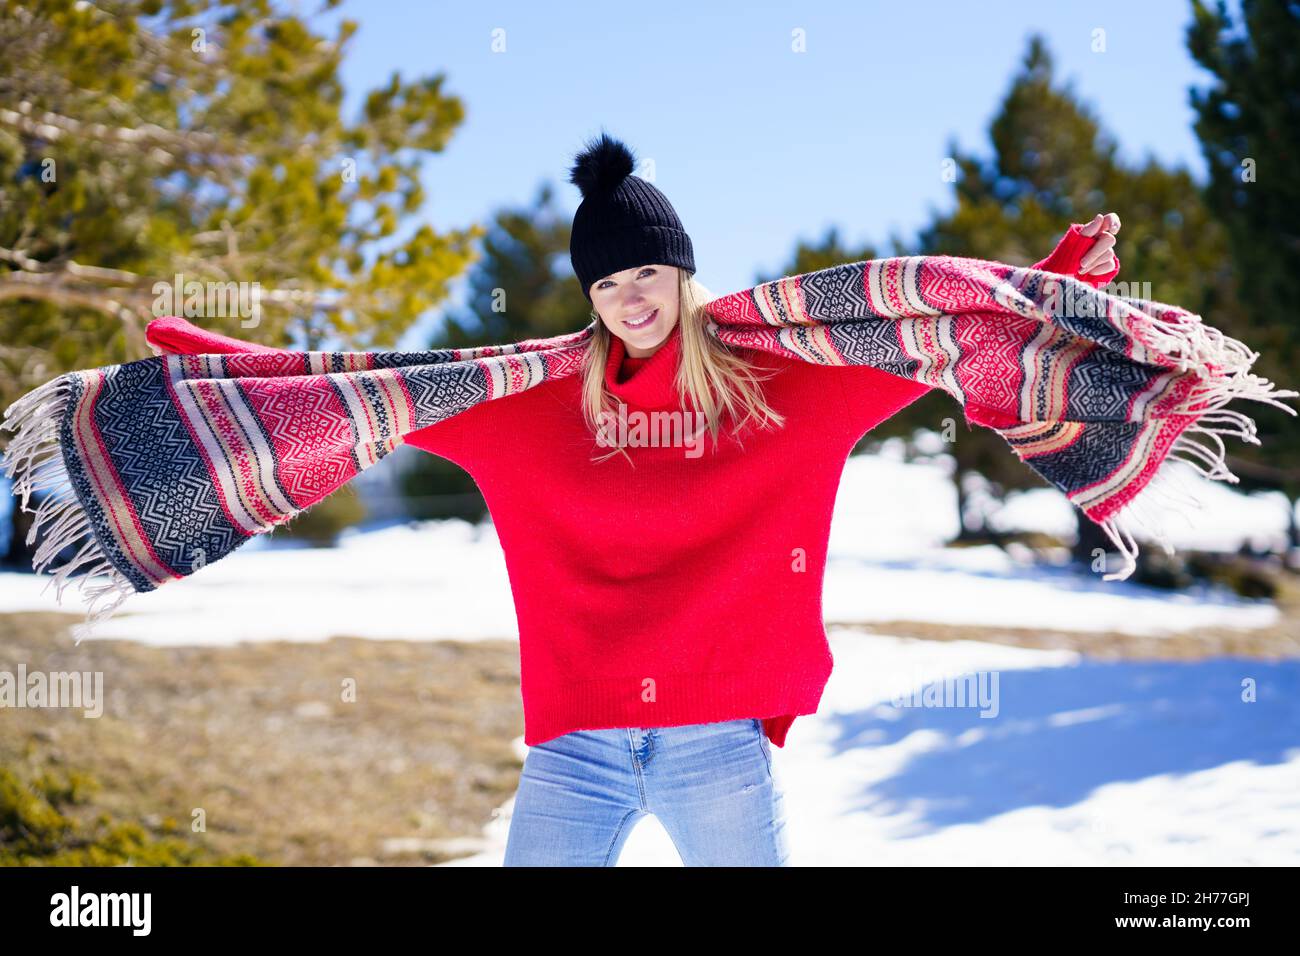 Junge glückliche junge blonde Frau winkt ihren Schal im Wind in einem Wald in den verschneiten Bergen. Stockfoto